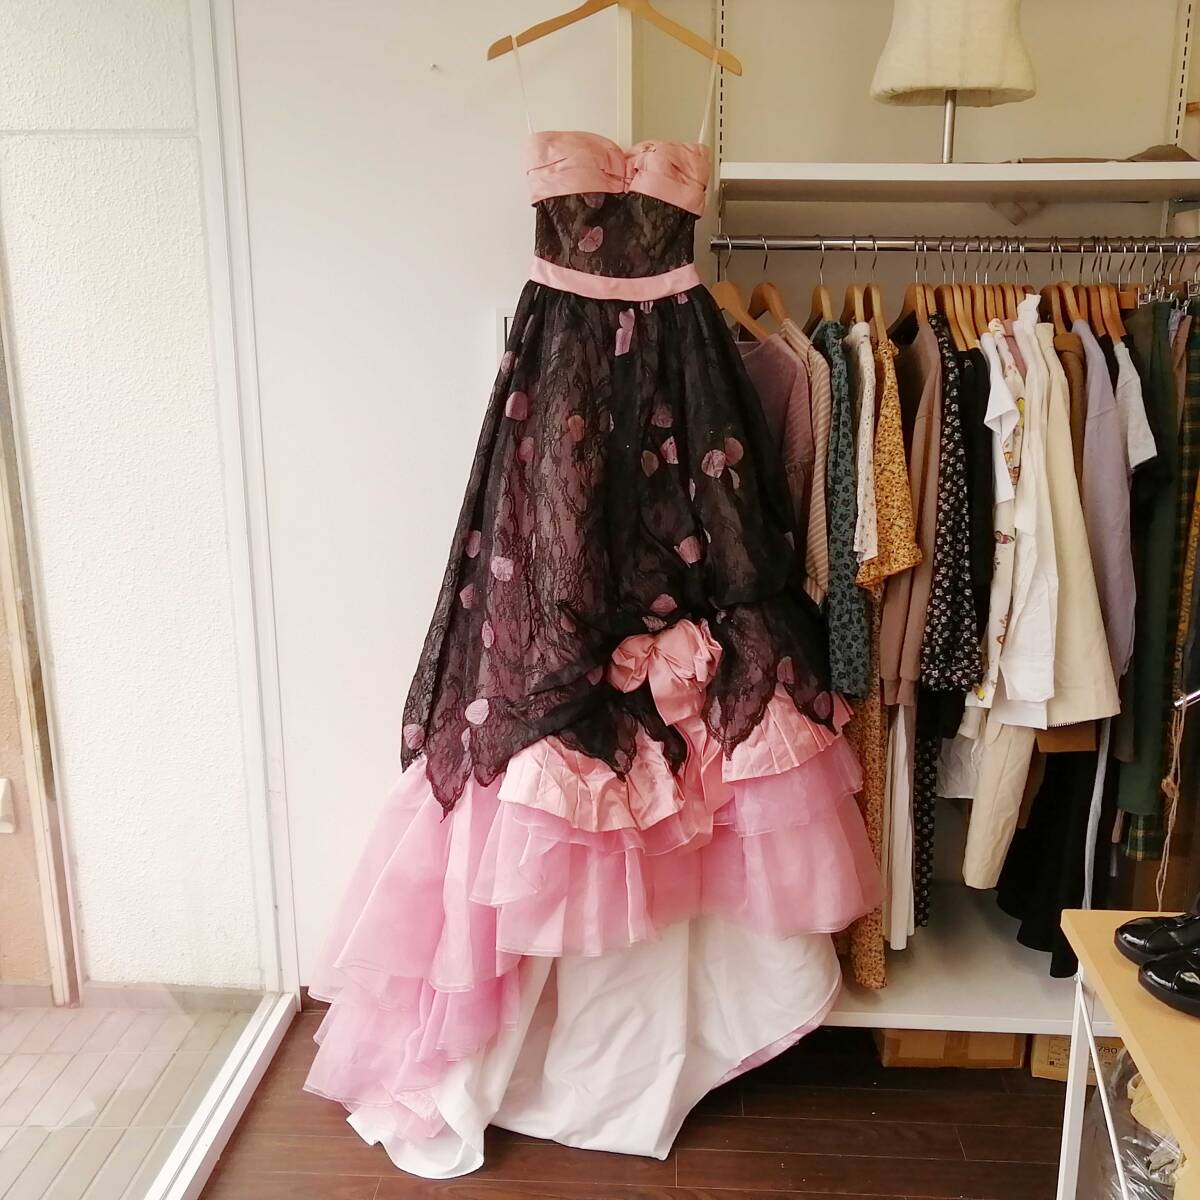 ROCHAS カラードレス 7号 ピンク×黒レース♪ロングドレス 汚れあり 発表会 舞台衣装に。240423ari2_画像3